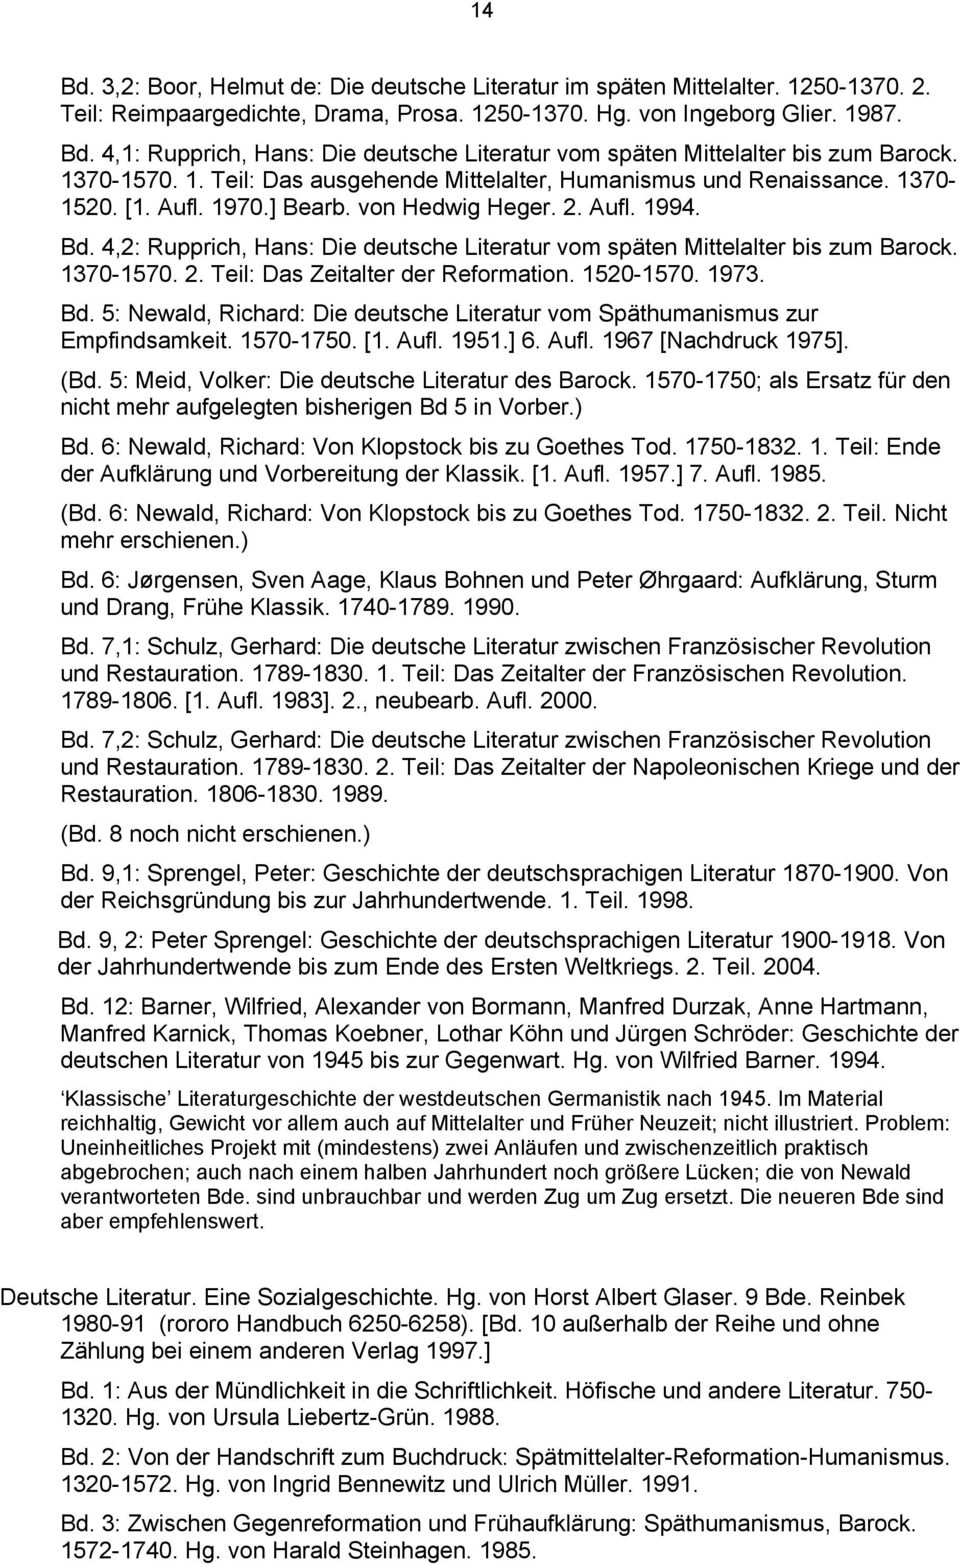 4,2: Rupprich, Hans: Die deutsche Literatur vom späten Mittelalter bis zum Barock. 1370-1570. 2. Teil: Das Zeitalter der Reformation. 1520-1570. 1973. Bd.